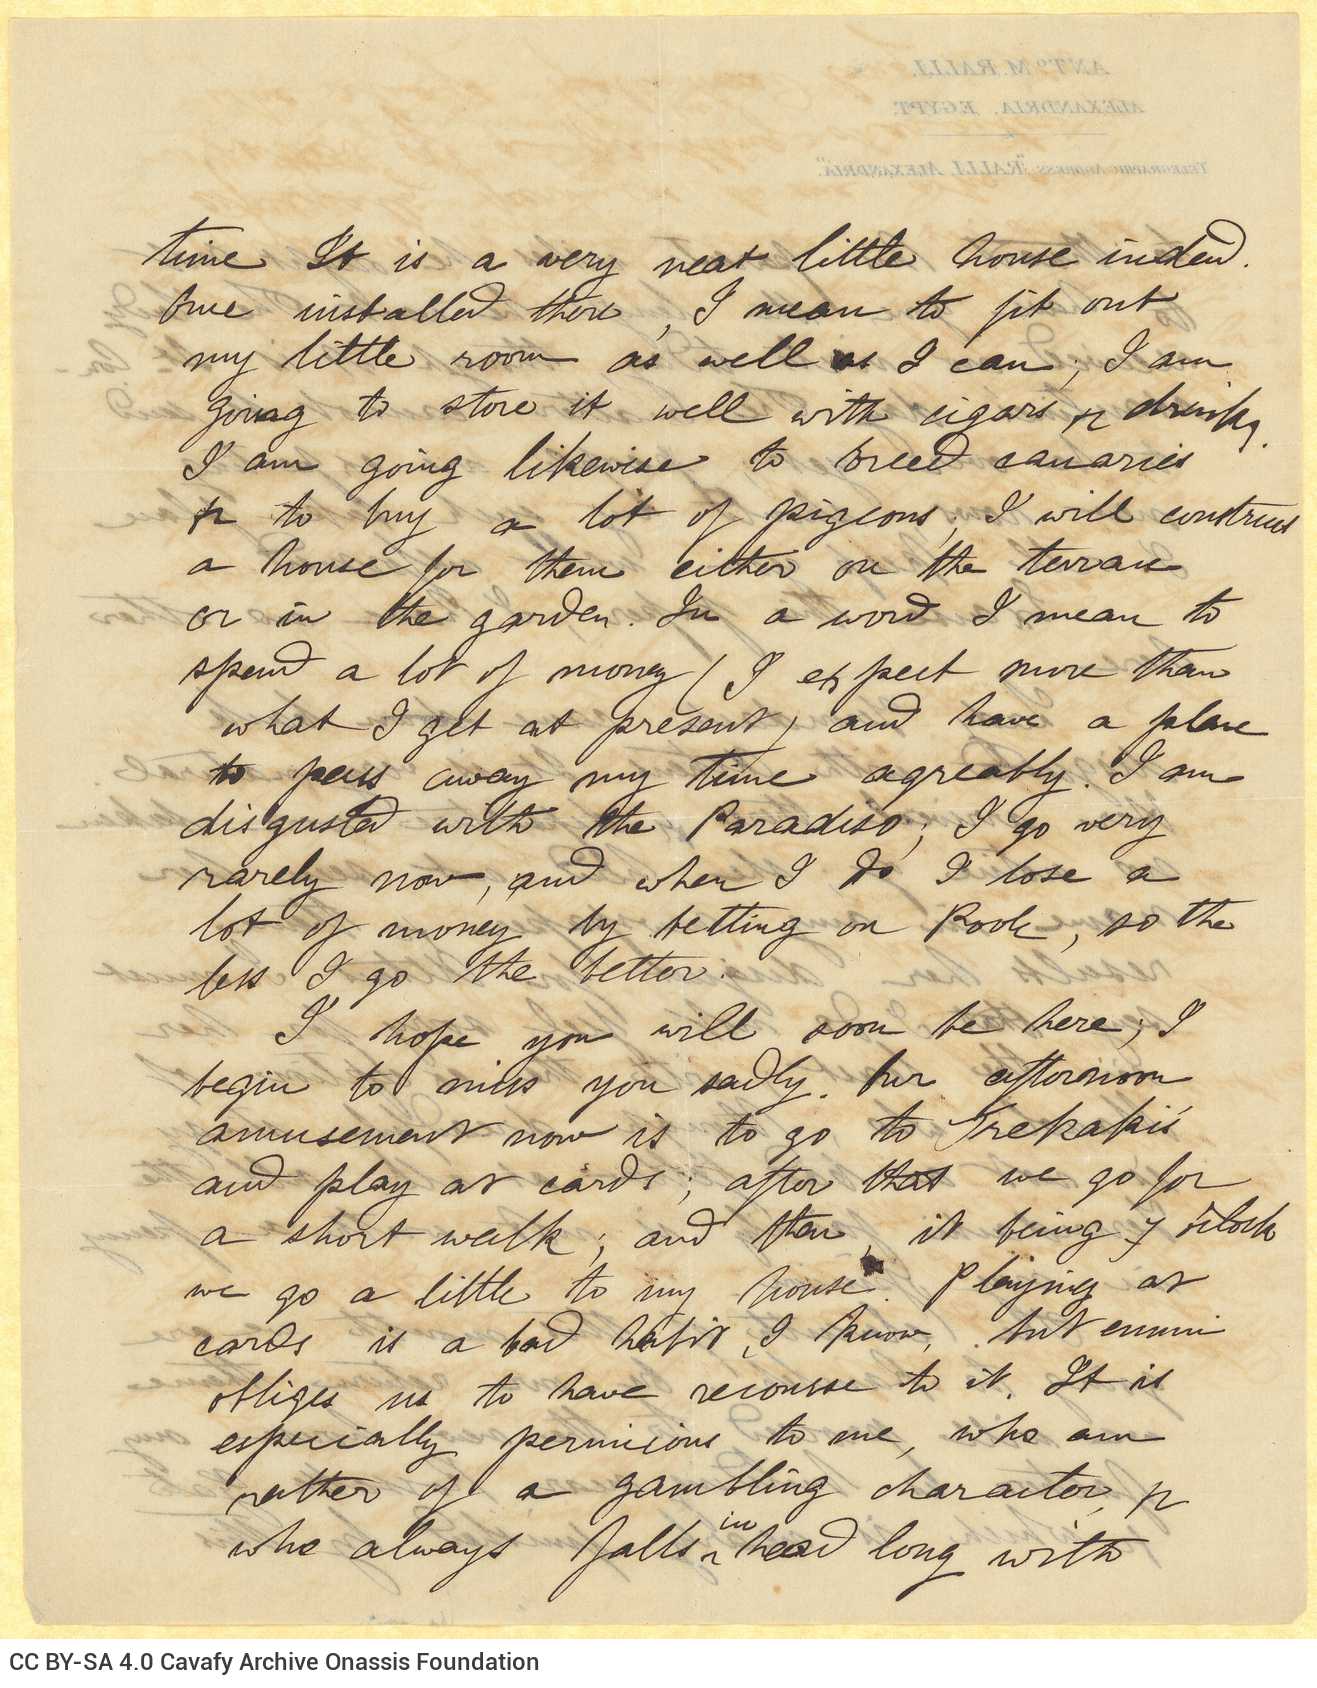 Χειρόγραφη επιστολή του Μικέ Ράλλη προς τον Καβάφη, σε ένα τετρασέλι